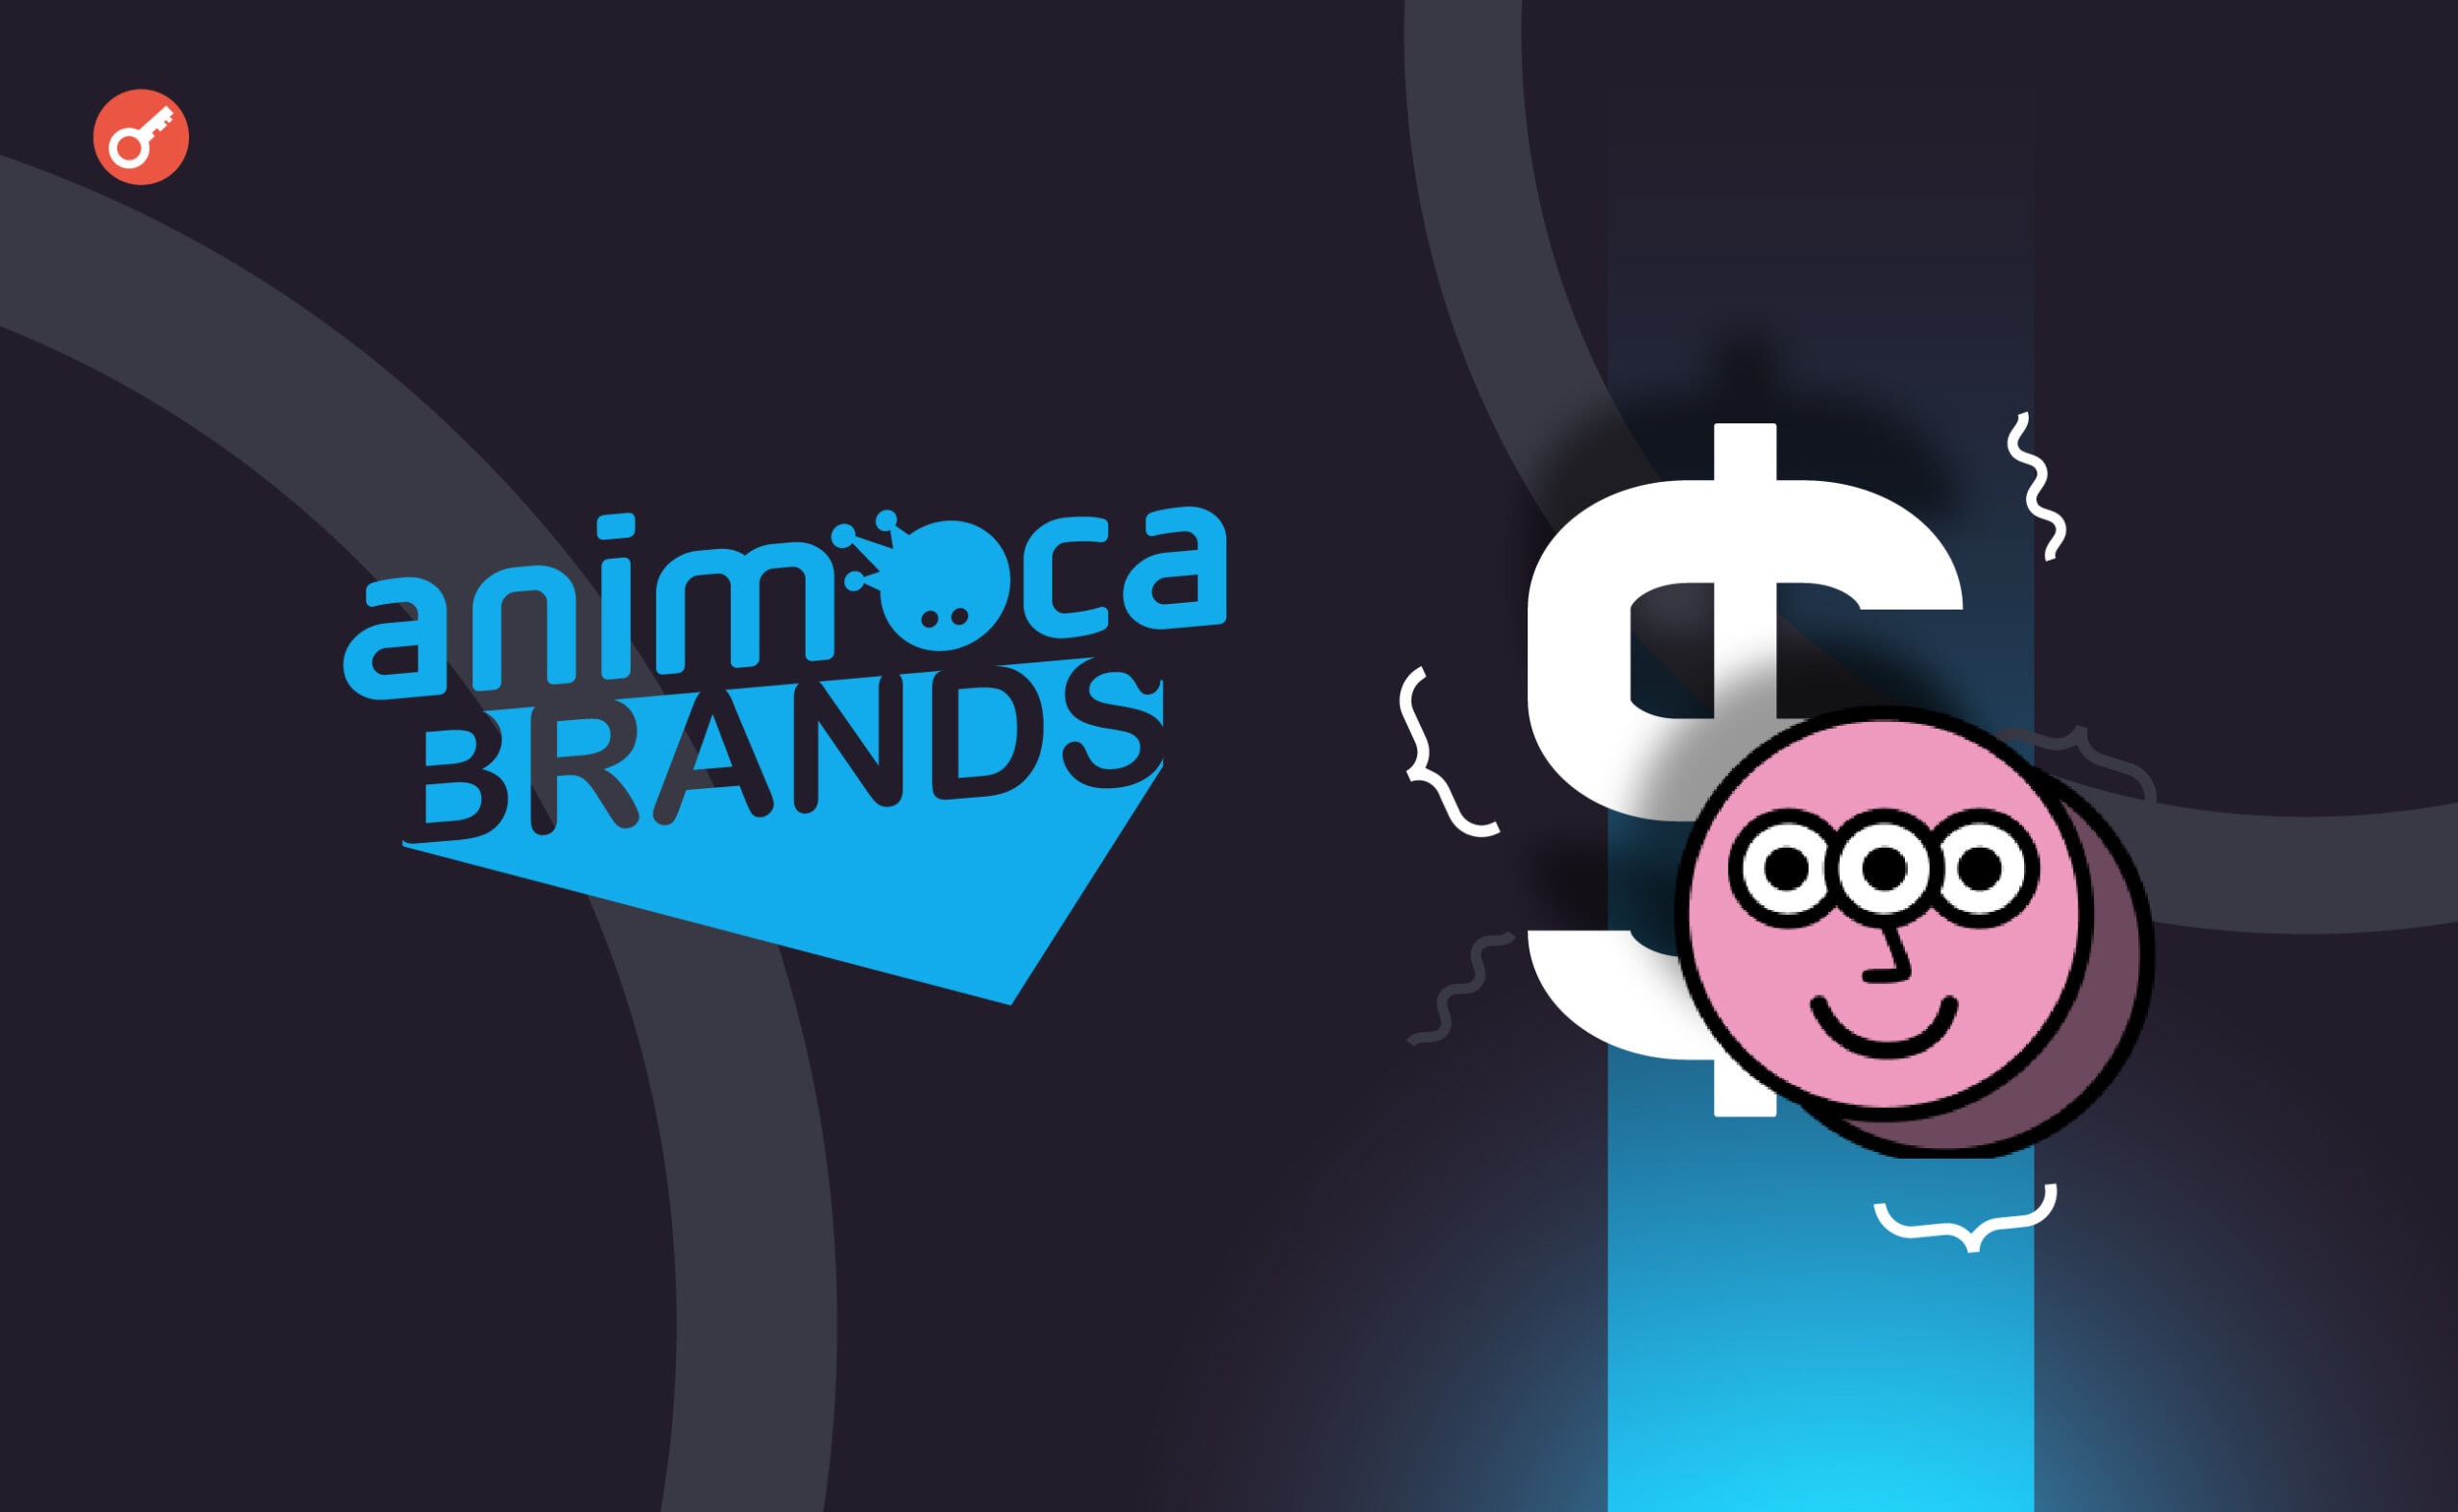 Animoca Brands залучила додаткові $11,88 млн для проєкту Mocaverse. Головний колаж новини.